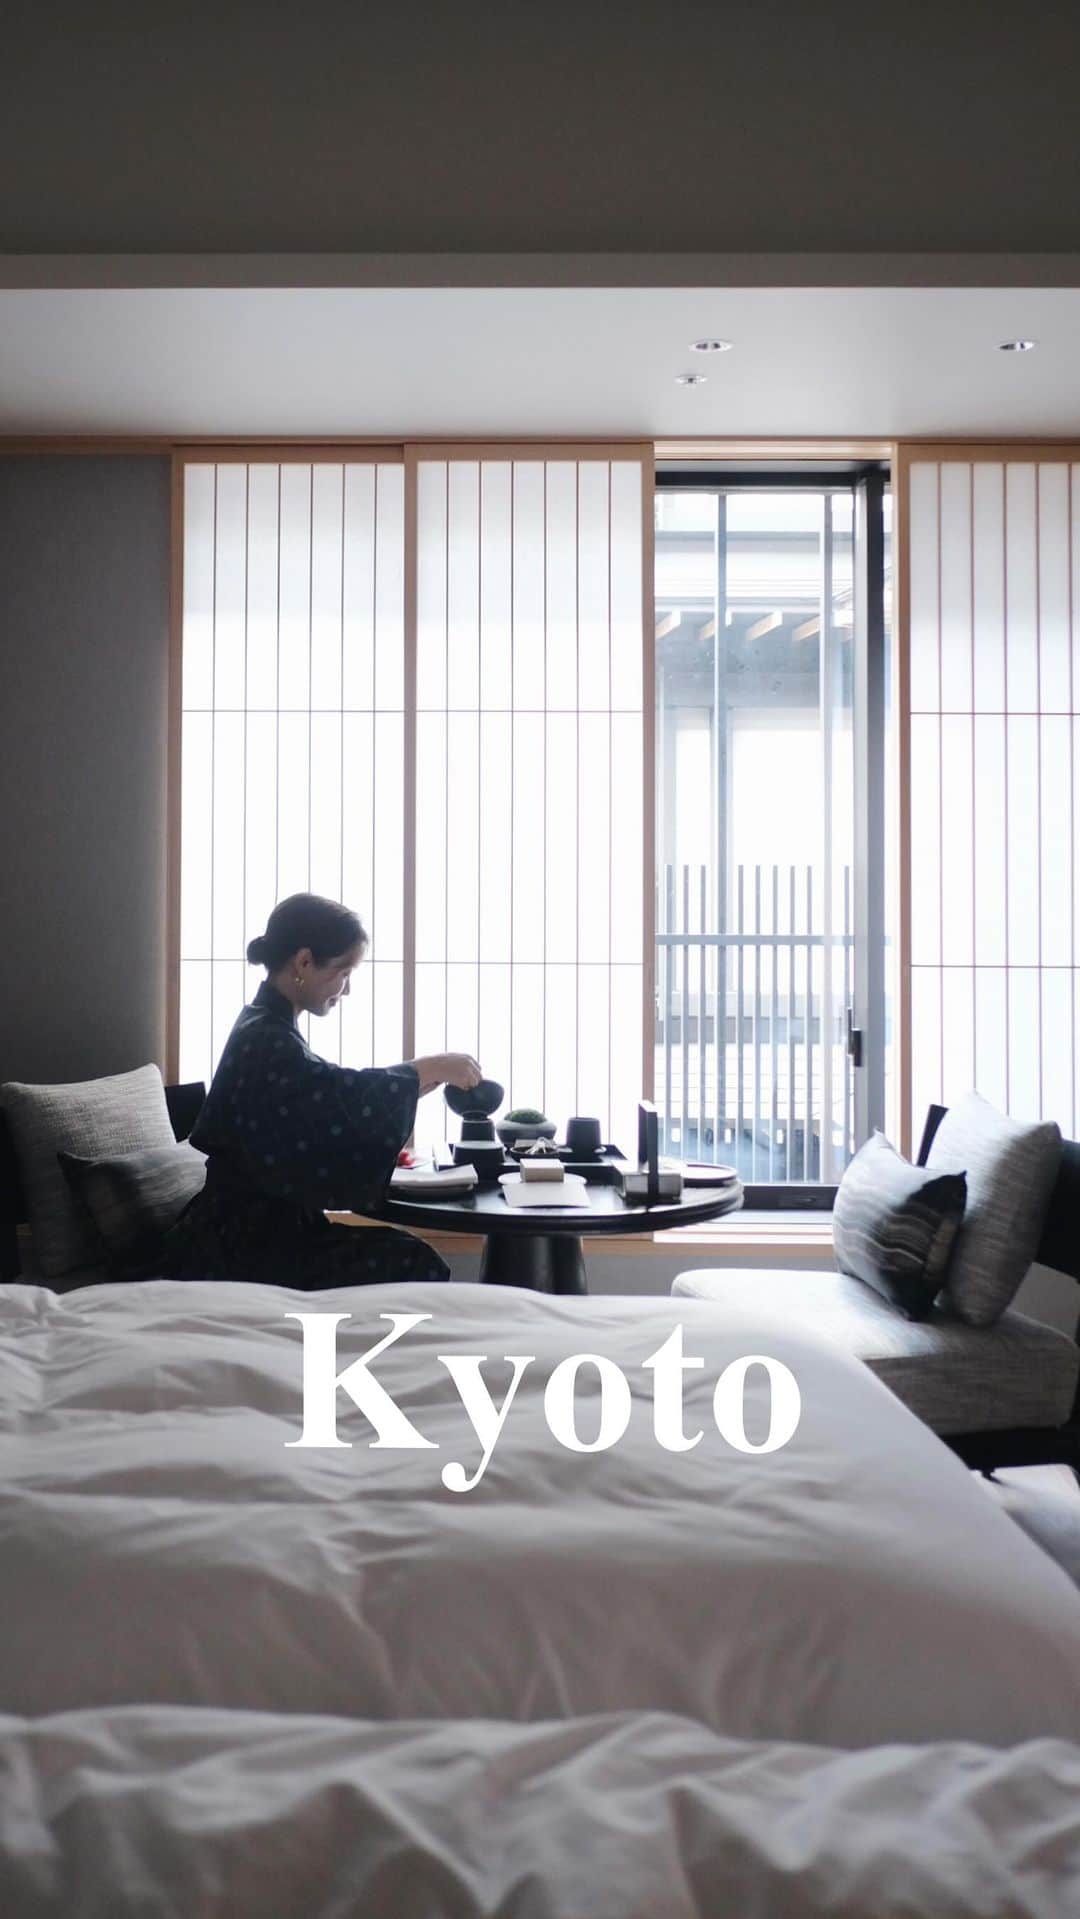 猪鼻ちひろのインスタグラム：「母娘旅in京都👘🎋 @dusitthanikyoto  ご招待いただきデュシタニ京都に宿泊させていただいています。 もう、もう！こんな素晴らしいホテルが京都に誕生していたなんて。 ホテル&京都好きなみんなに教えたい😤  観光するのも大好きだけれどホテルでのんびりも大好きなので、贅沢な時間を過ごせているよ〜🍃 チェックアウト12時が神だよ〜  デュシタニはタイを拠点としたホテルだけれど初の日本上陸で、 日本や京都の繊細な伝統文化と(地産地消なども取り入れていたり)と タイの優雅なホスピタリティ、オリエンタルさを織り交ぜたラグジュアリーなホテル👏  スパ〜ご飯まで唯一無二の体験ができるし お客さんや働いてる方々も海外の方が多いから日本じゃないみたい🌏(天井も高いし香りもすごいよー！)  環境のことを考えられたアメニティやサービス、 ジムやサウナにプールにスパ、 レプロナイザーのドライヤー、 お洒落なインテリアなどなど 嬉しいポイントが次々と🤩  スイートルーム(1泊25万円〜かな)も 全て満室なの、すごいなぁ。 また行きたいから納得！ ご飯も美味しかったぁーーー #ちひろトリップ #ちひろtrip関西 #dusitthanikyoto #デュシタニ京都 #京都旅行 #京都ホテル #ホテル #女子旅 #kyoto #京都」